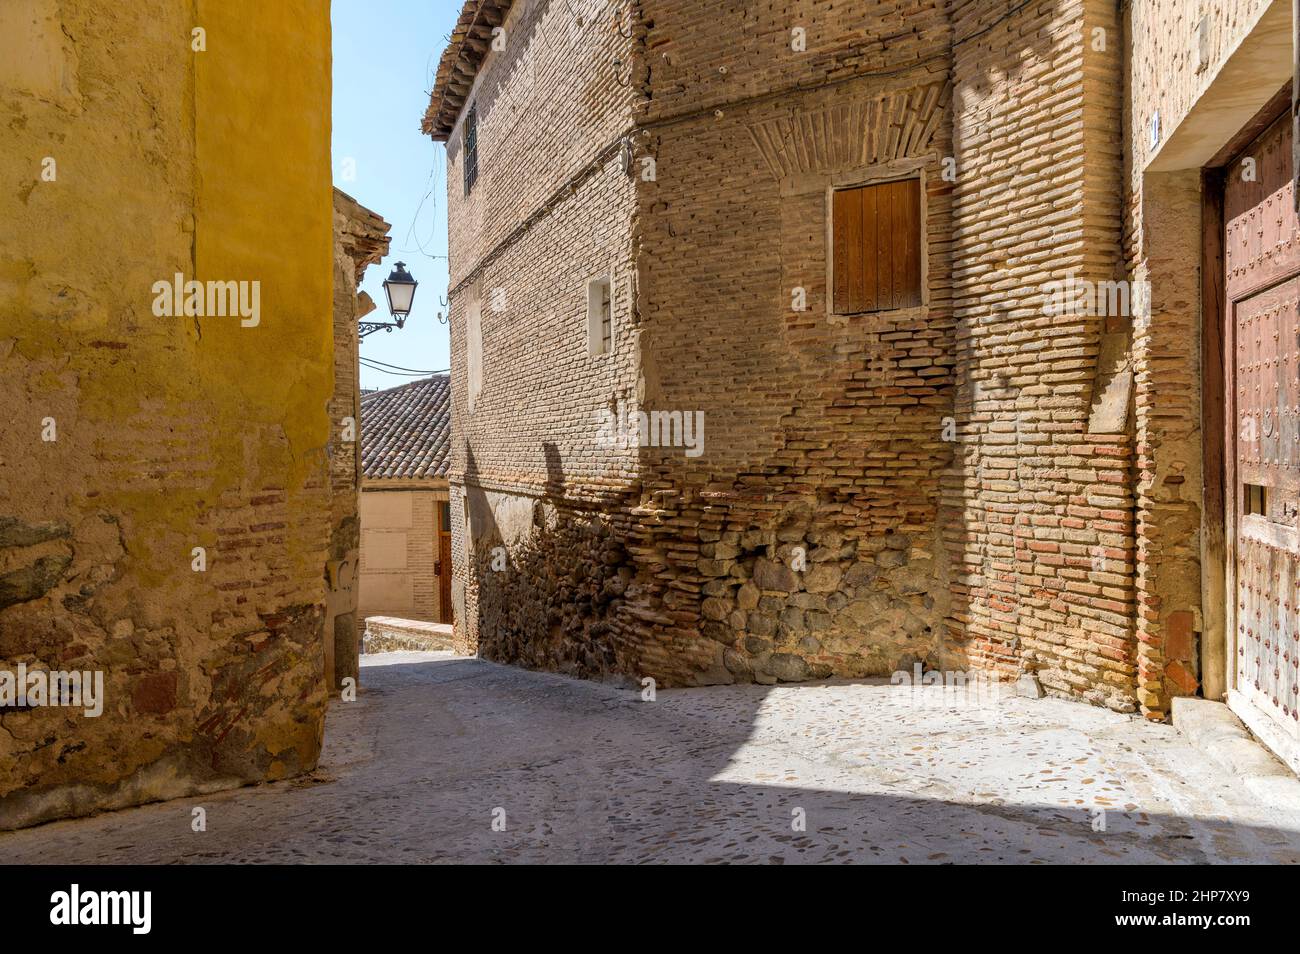 Old Street - in der historischen Stadt Toledo, Spanien, scheint am Nachmittag in einer engen Straße, die von alten Backstein- und Steingebäuden umgeben ist, helles Sonnenlicht. Stockfoto